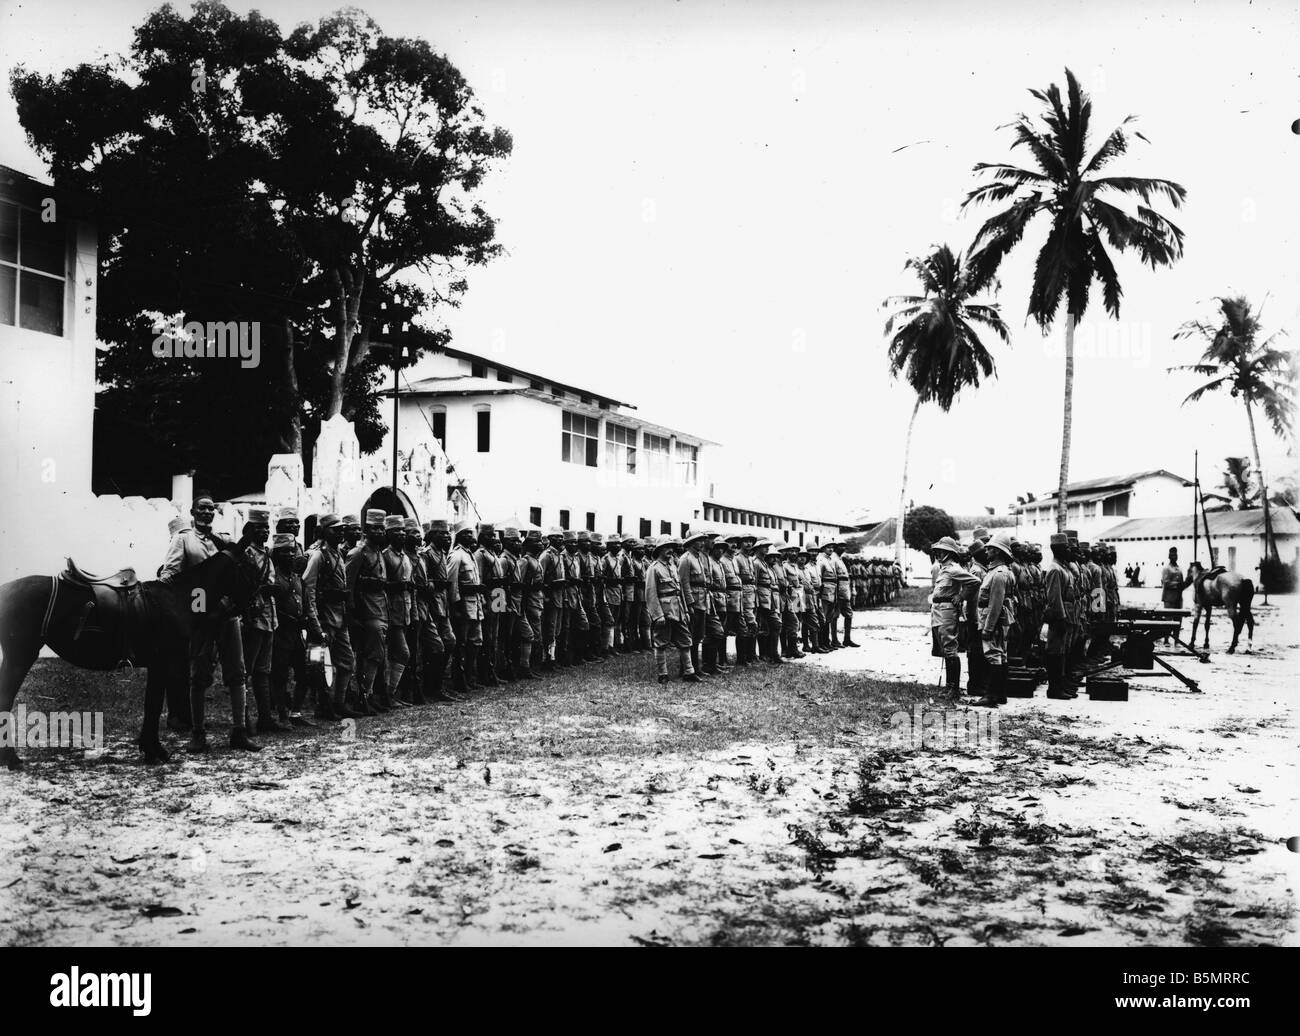 Askaris prêt pour le départ de la Première Guerre Mondiale 1914 Guerre dans les colonies de l'Afrique orientale allemande aujourd'hui la Tanzanie Photo Askaris Banque D'Images